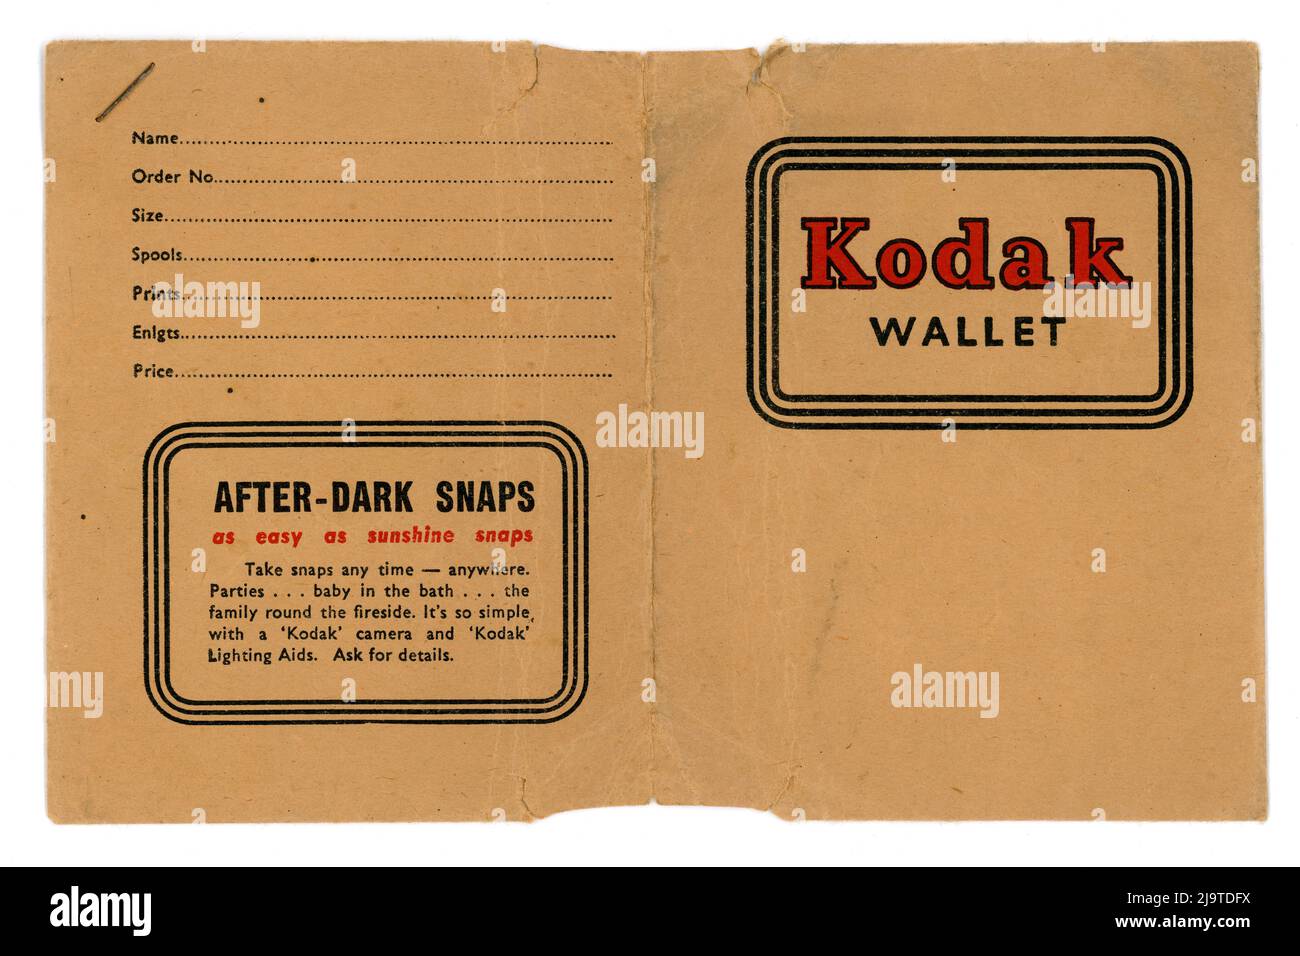 La cartera fotográfica Kodak original de 1930 se abrió para mostrar los detalles del cliente, utilizada por un cliente británico en 1937, Reino Unido Foto de stock